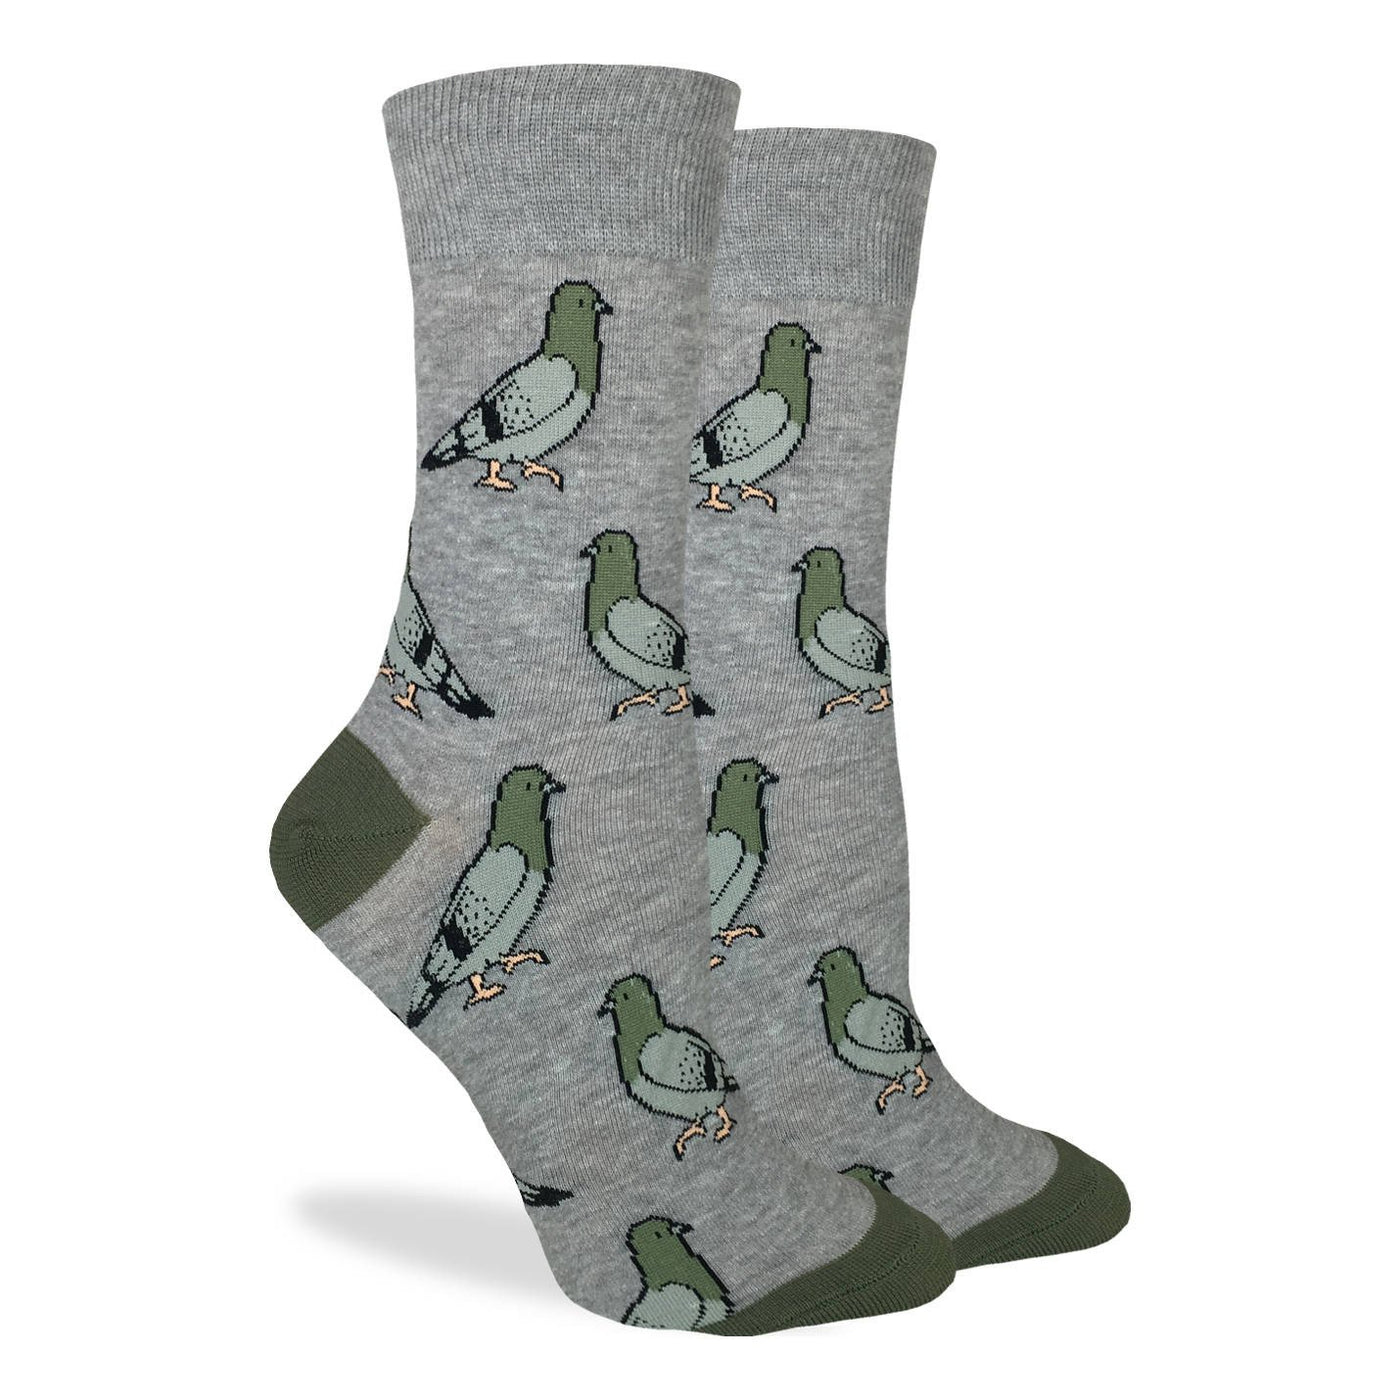 Pigeon socks